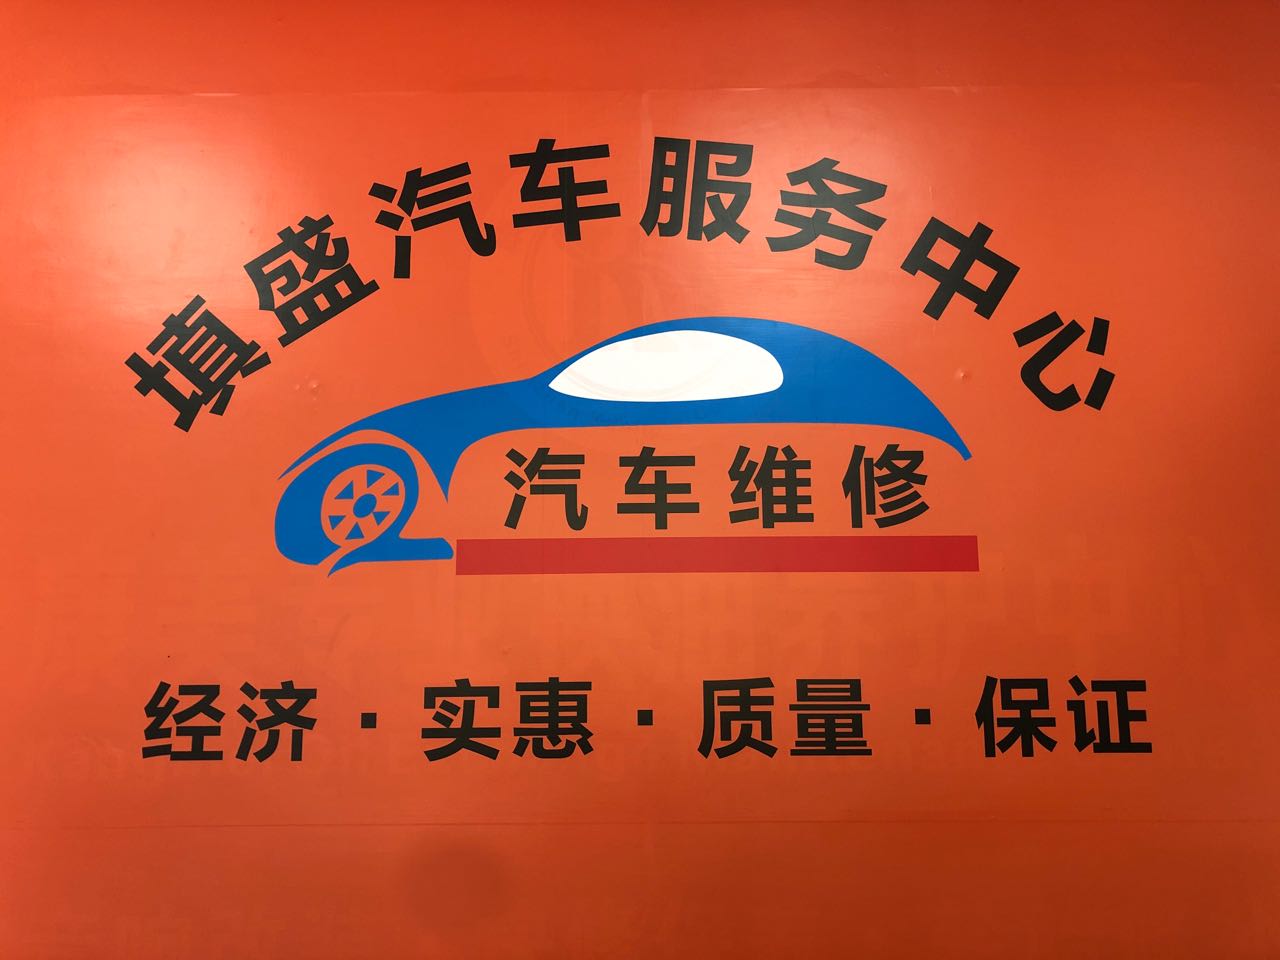 深圳市填盛汽车服务中心